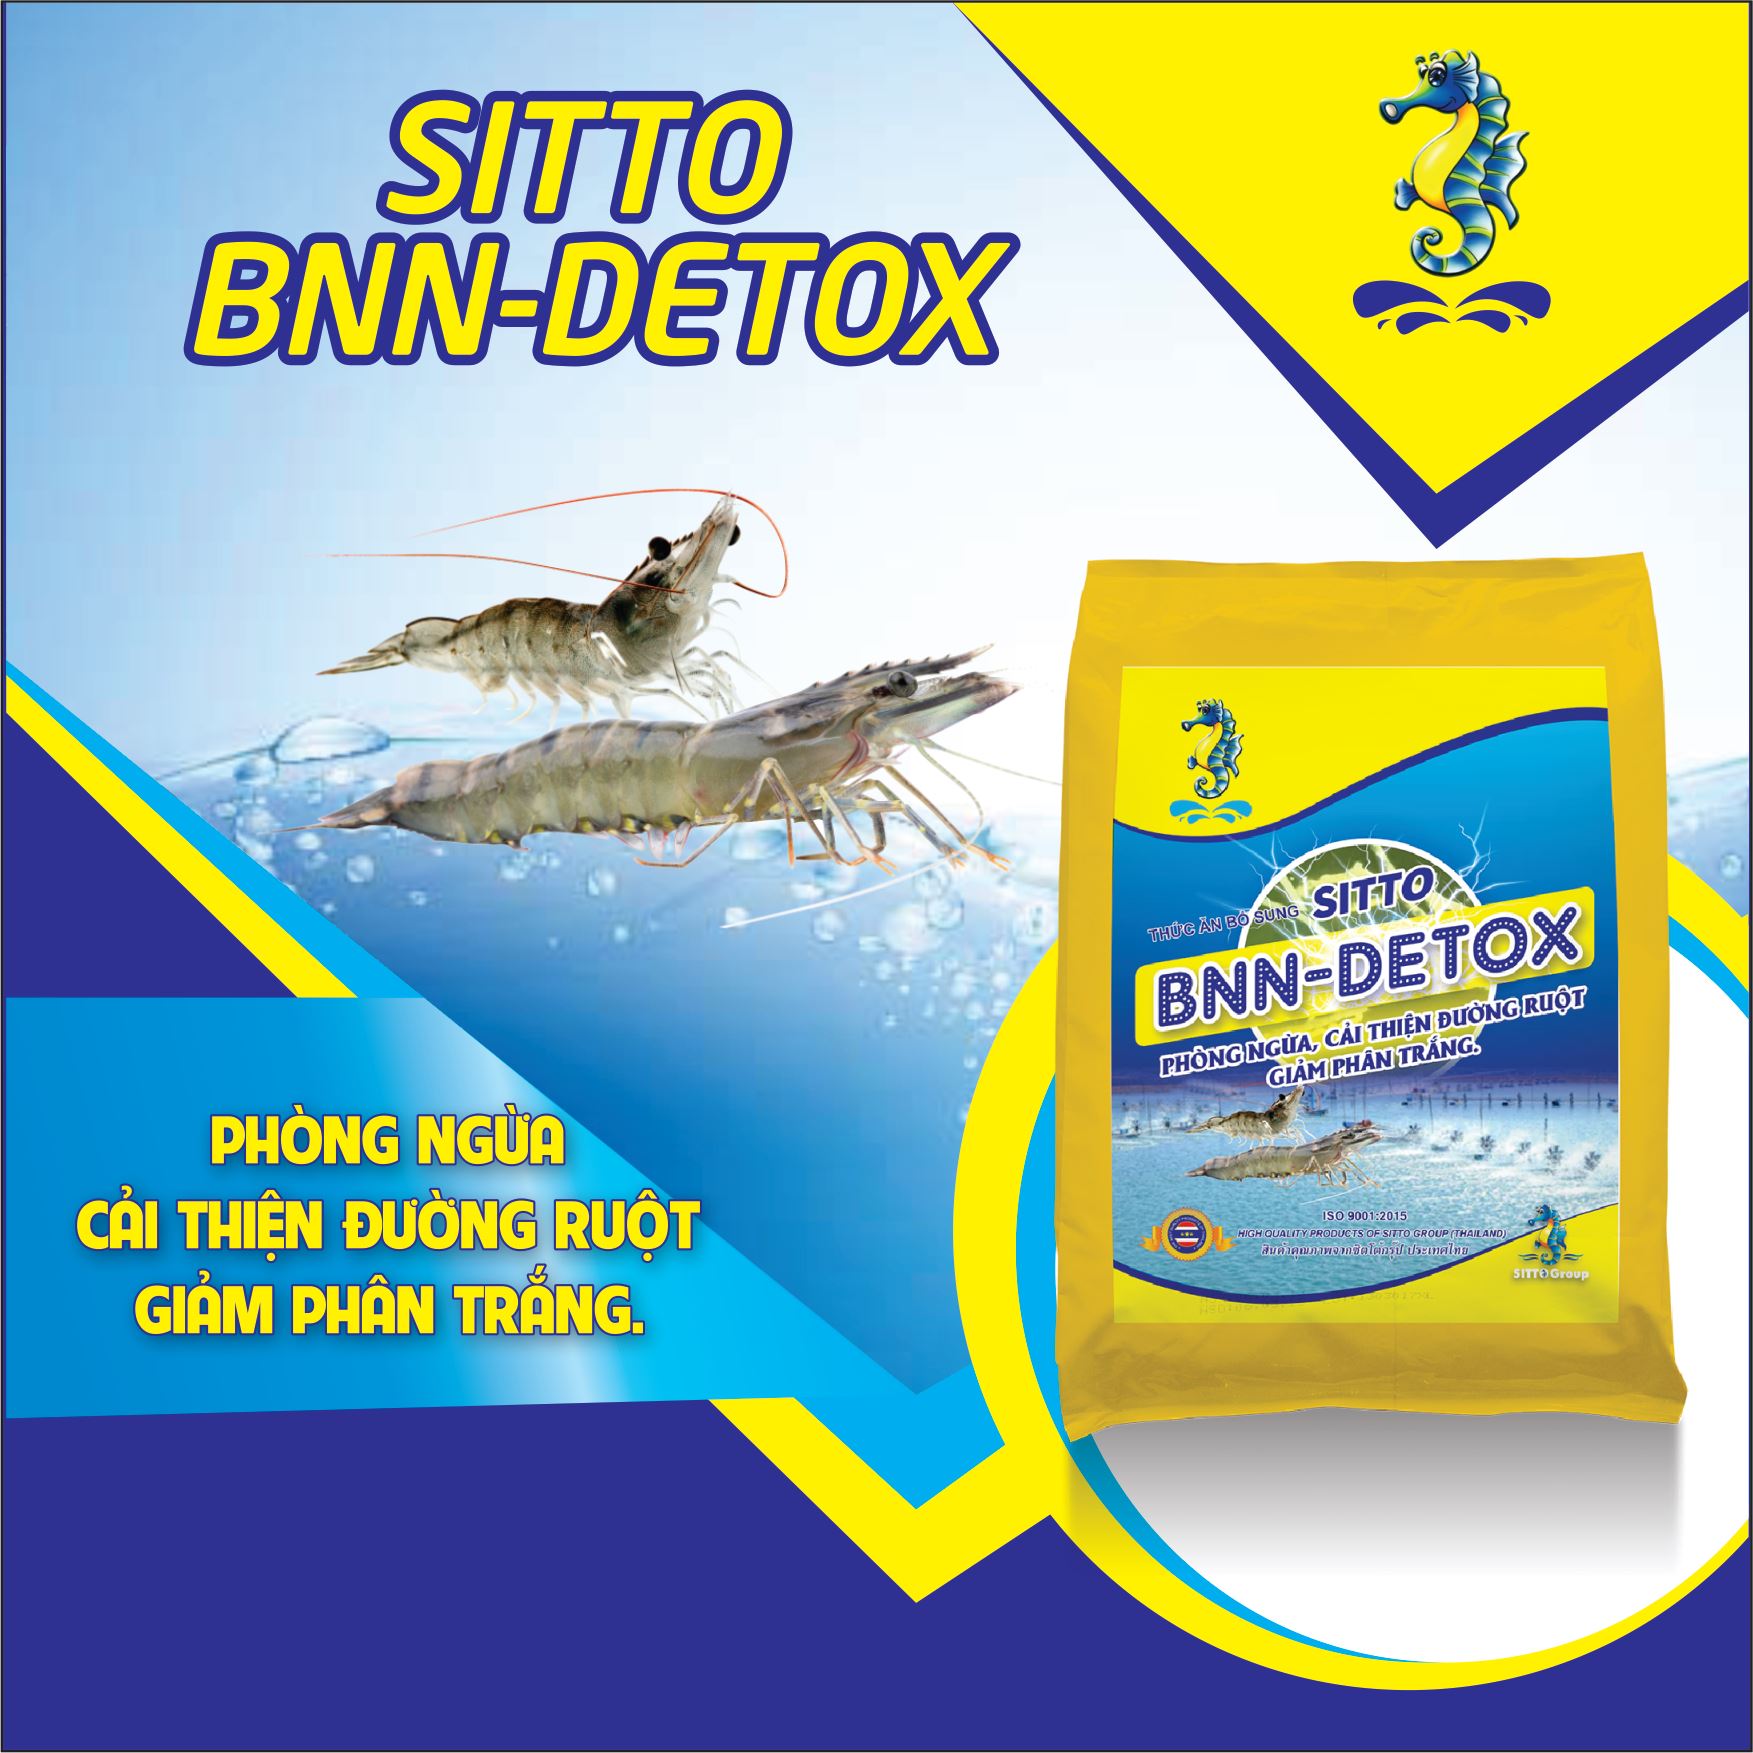 Hướng dẫn sử dụng Sản phẩm Dinh dưỡng bổ sung - Sitto BNN-Detox (Gói 500g)